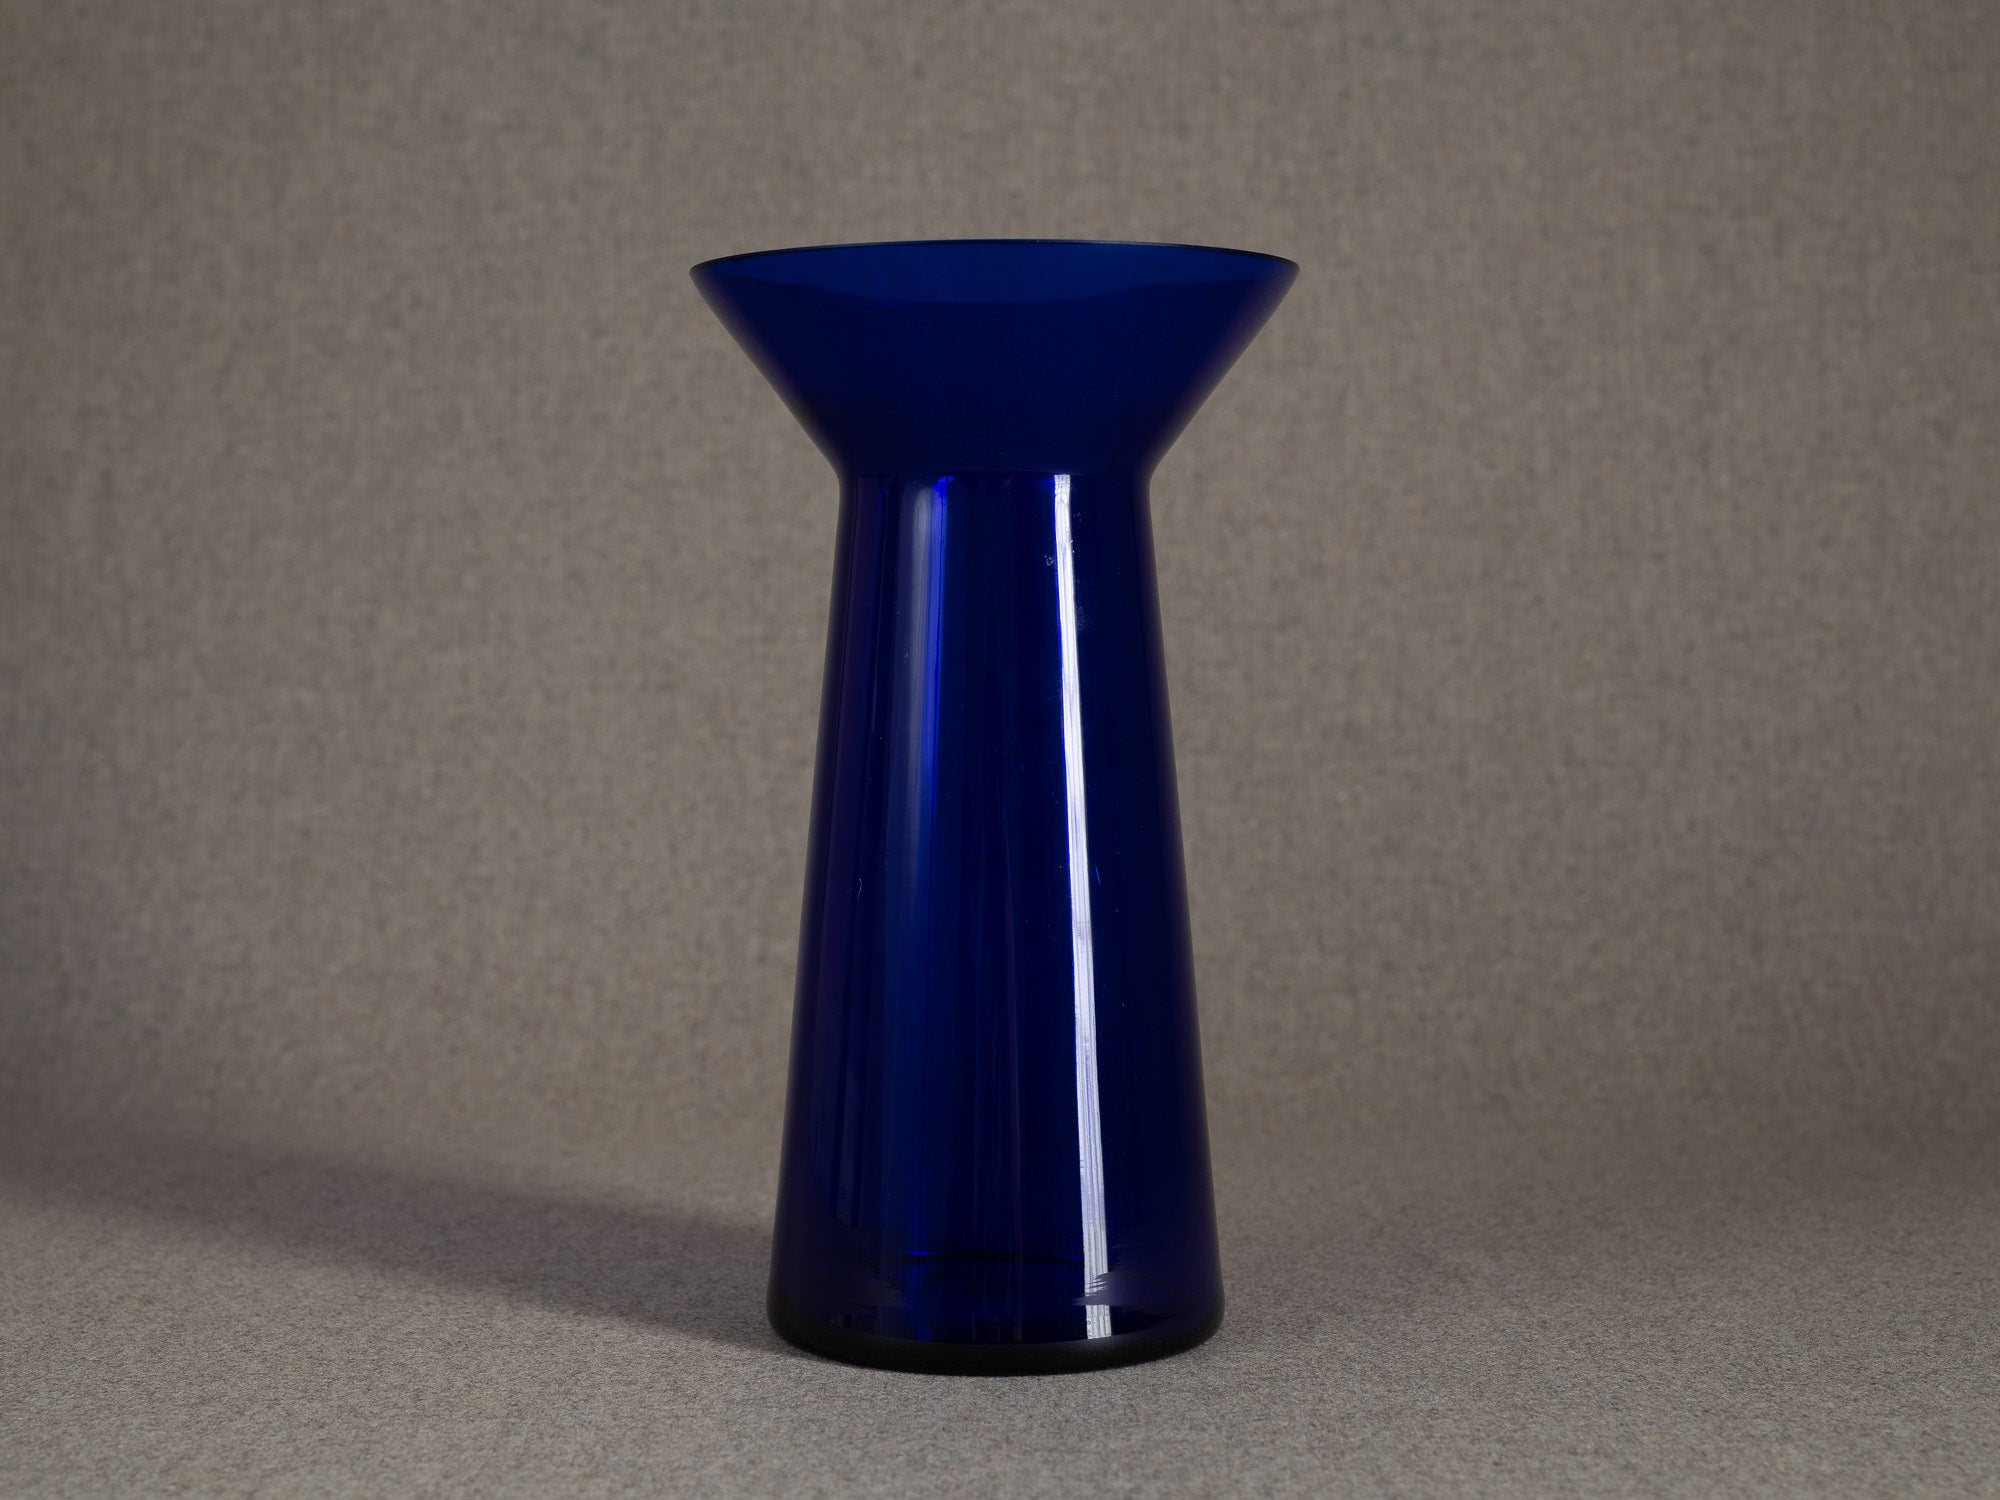 Vase diabolo en cristal bleu, entourage de Kaj Franck & Nuutajärvi Notsjo, Scandinavie (années 1960-70)..Diabolo vase in blue crystal, entourage of Kaj Franck & Nuutajärvi Notsjo, Scandinavia (1960s-70s)